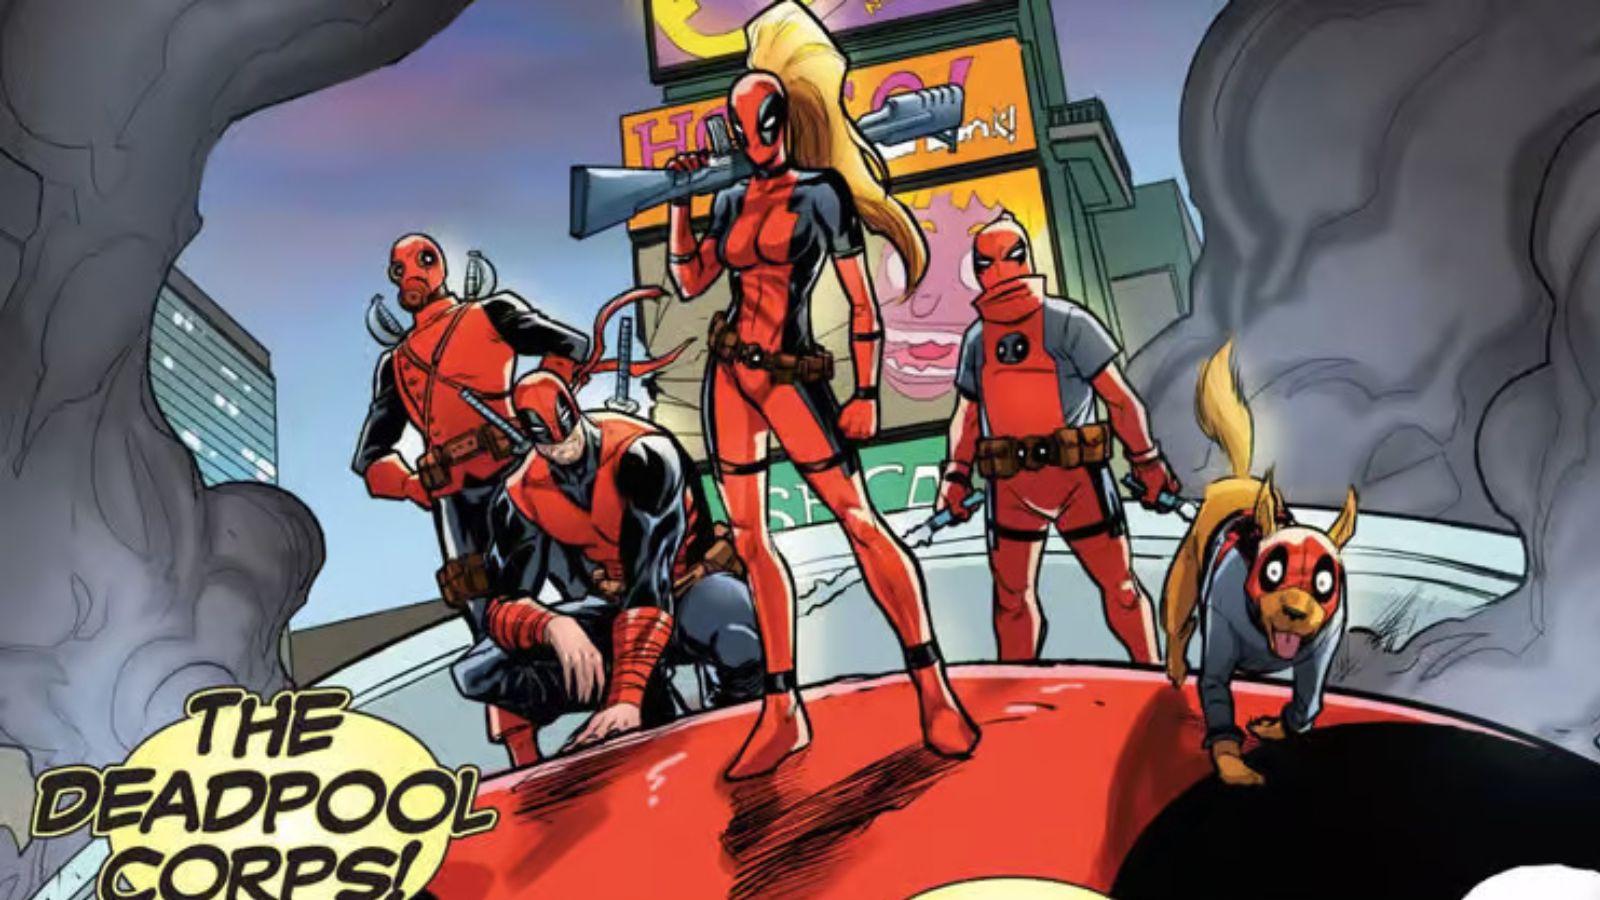 Le Deadpool Corps dans les comics Marvel